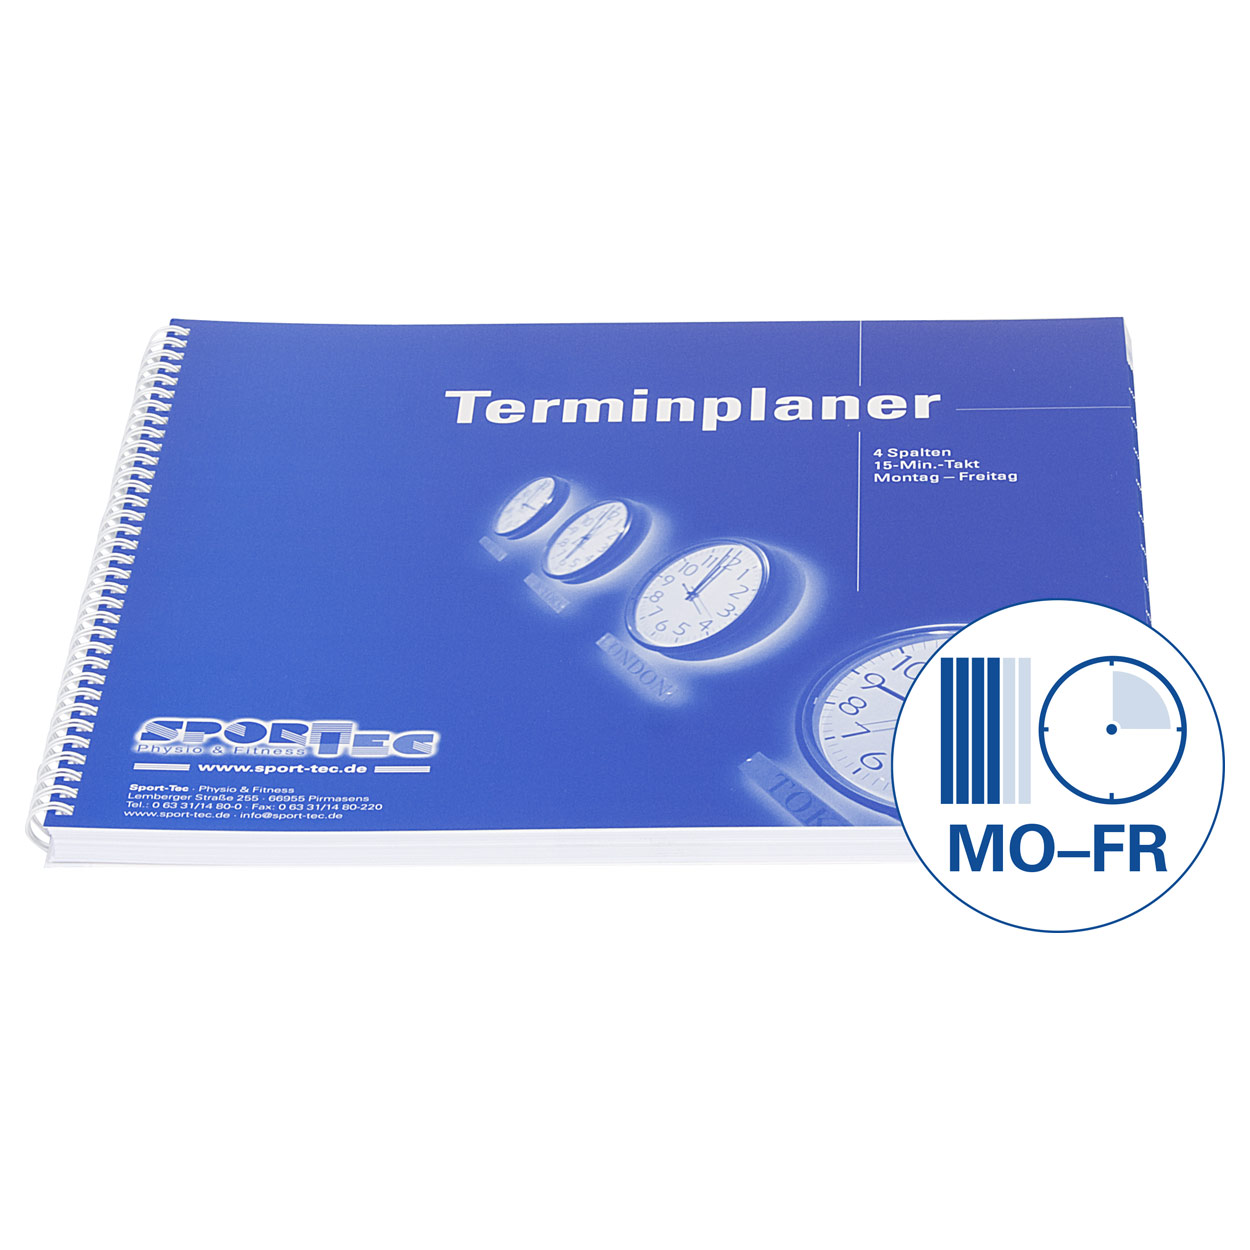 Terminplaner Organizer Terminbuch für Praxis & Therapie 4 Spalten 15 Min Mo.-Fr.